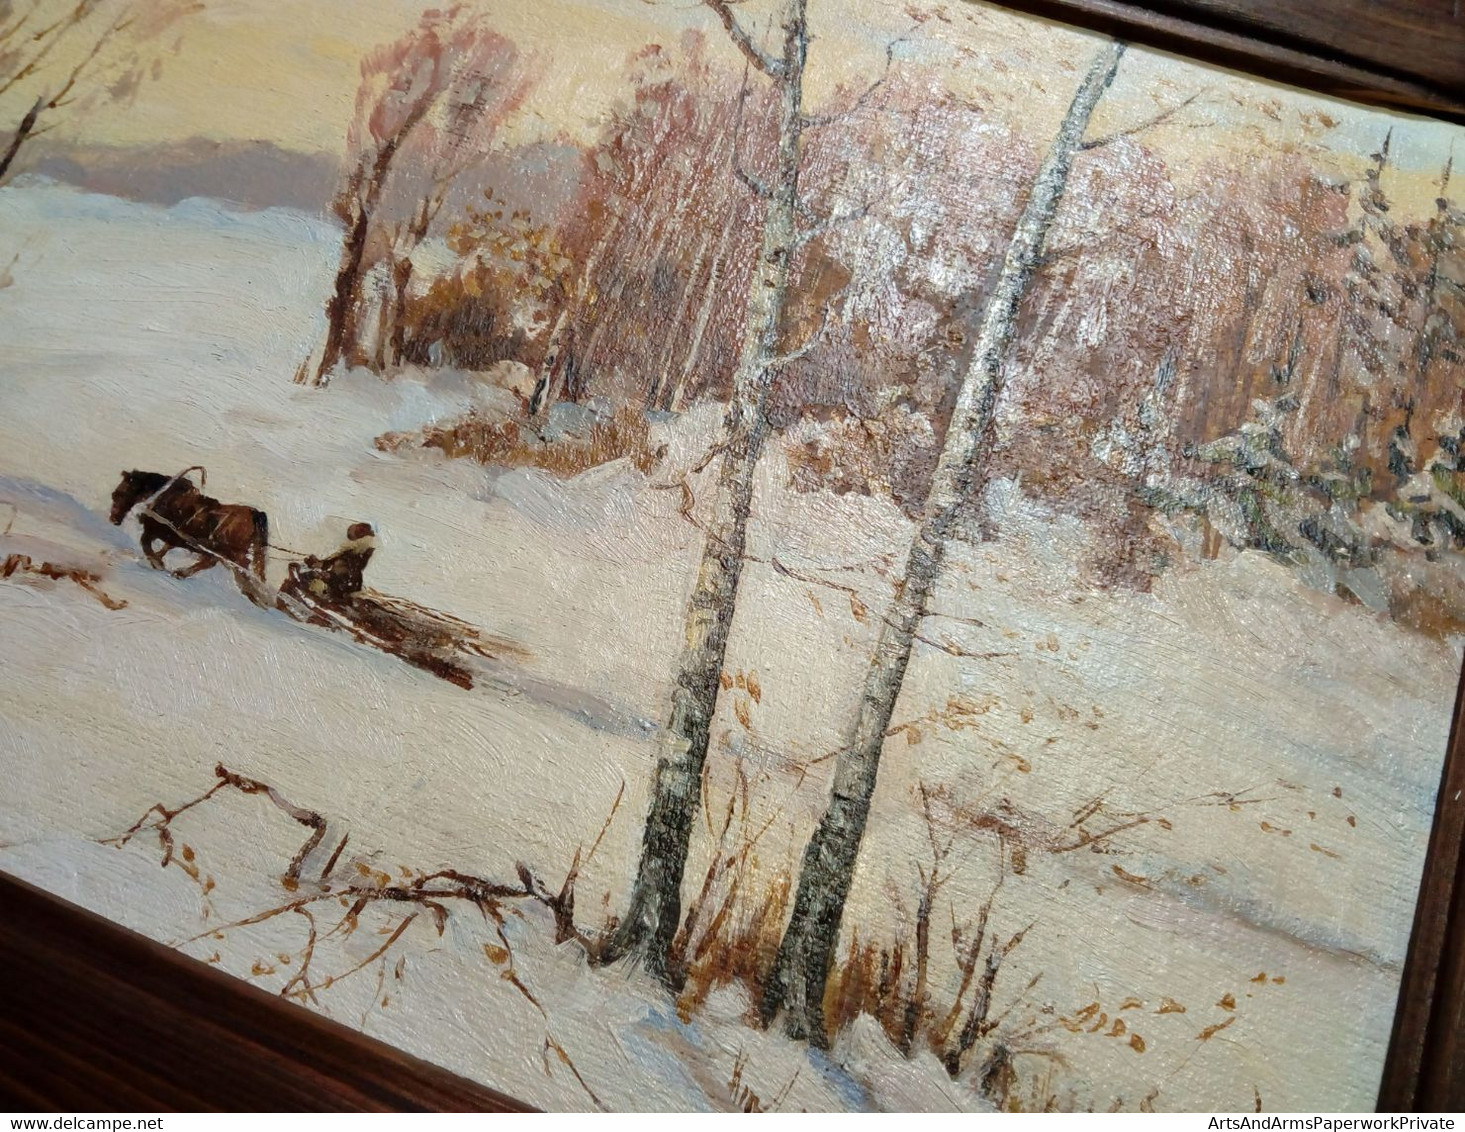 Promenade En Traîneau à Cheval Dans Un Paysage Hivernal/ Horse-drawn Sleigh Ride In A Winter Landscape - Huiles